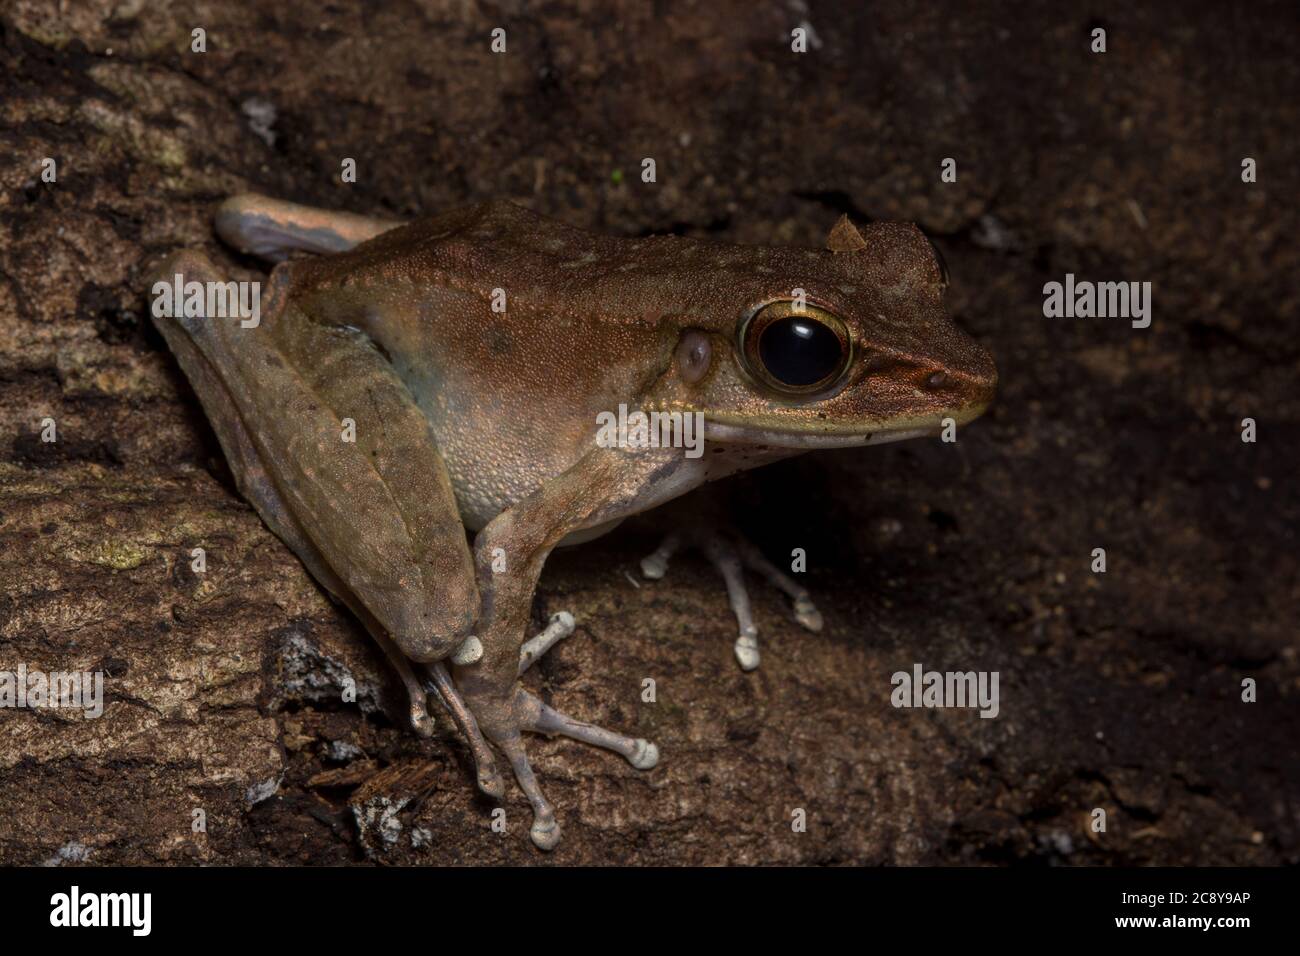 La rana di Borneo di Sabah o la rana di torrent a piedi dusky (Meristogenys orphnocnemis), uno specis di rana in un genere interamente endemic a Borneo. Foto Stock